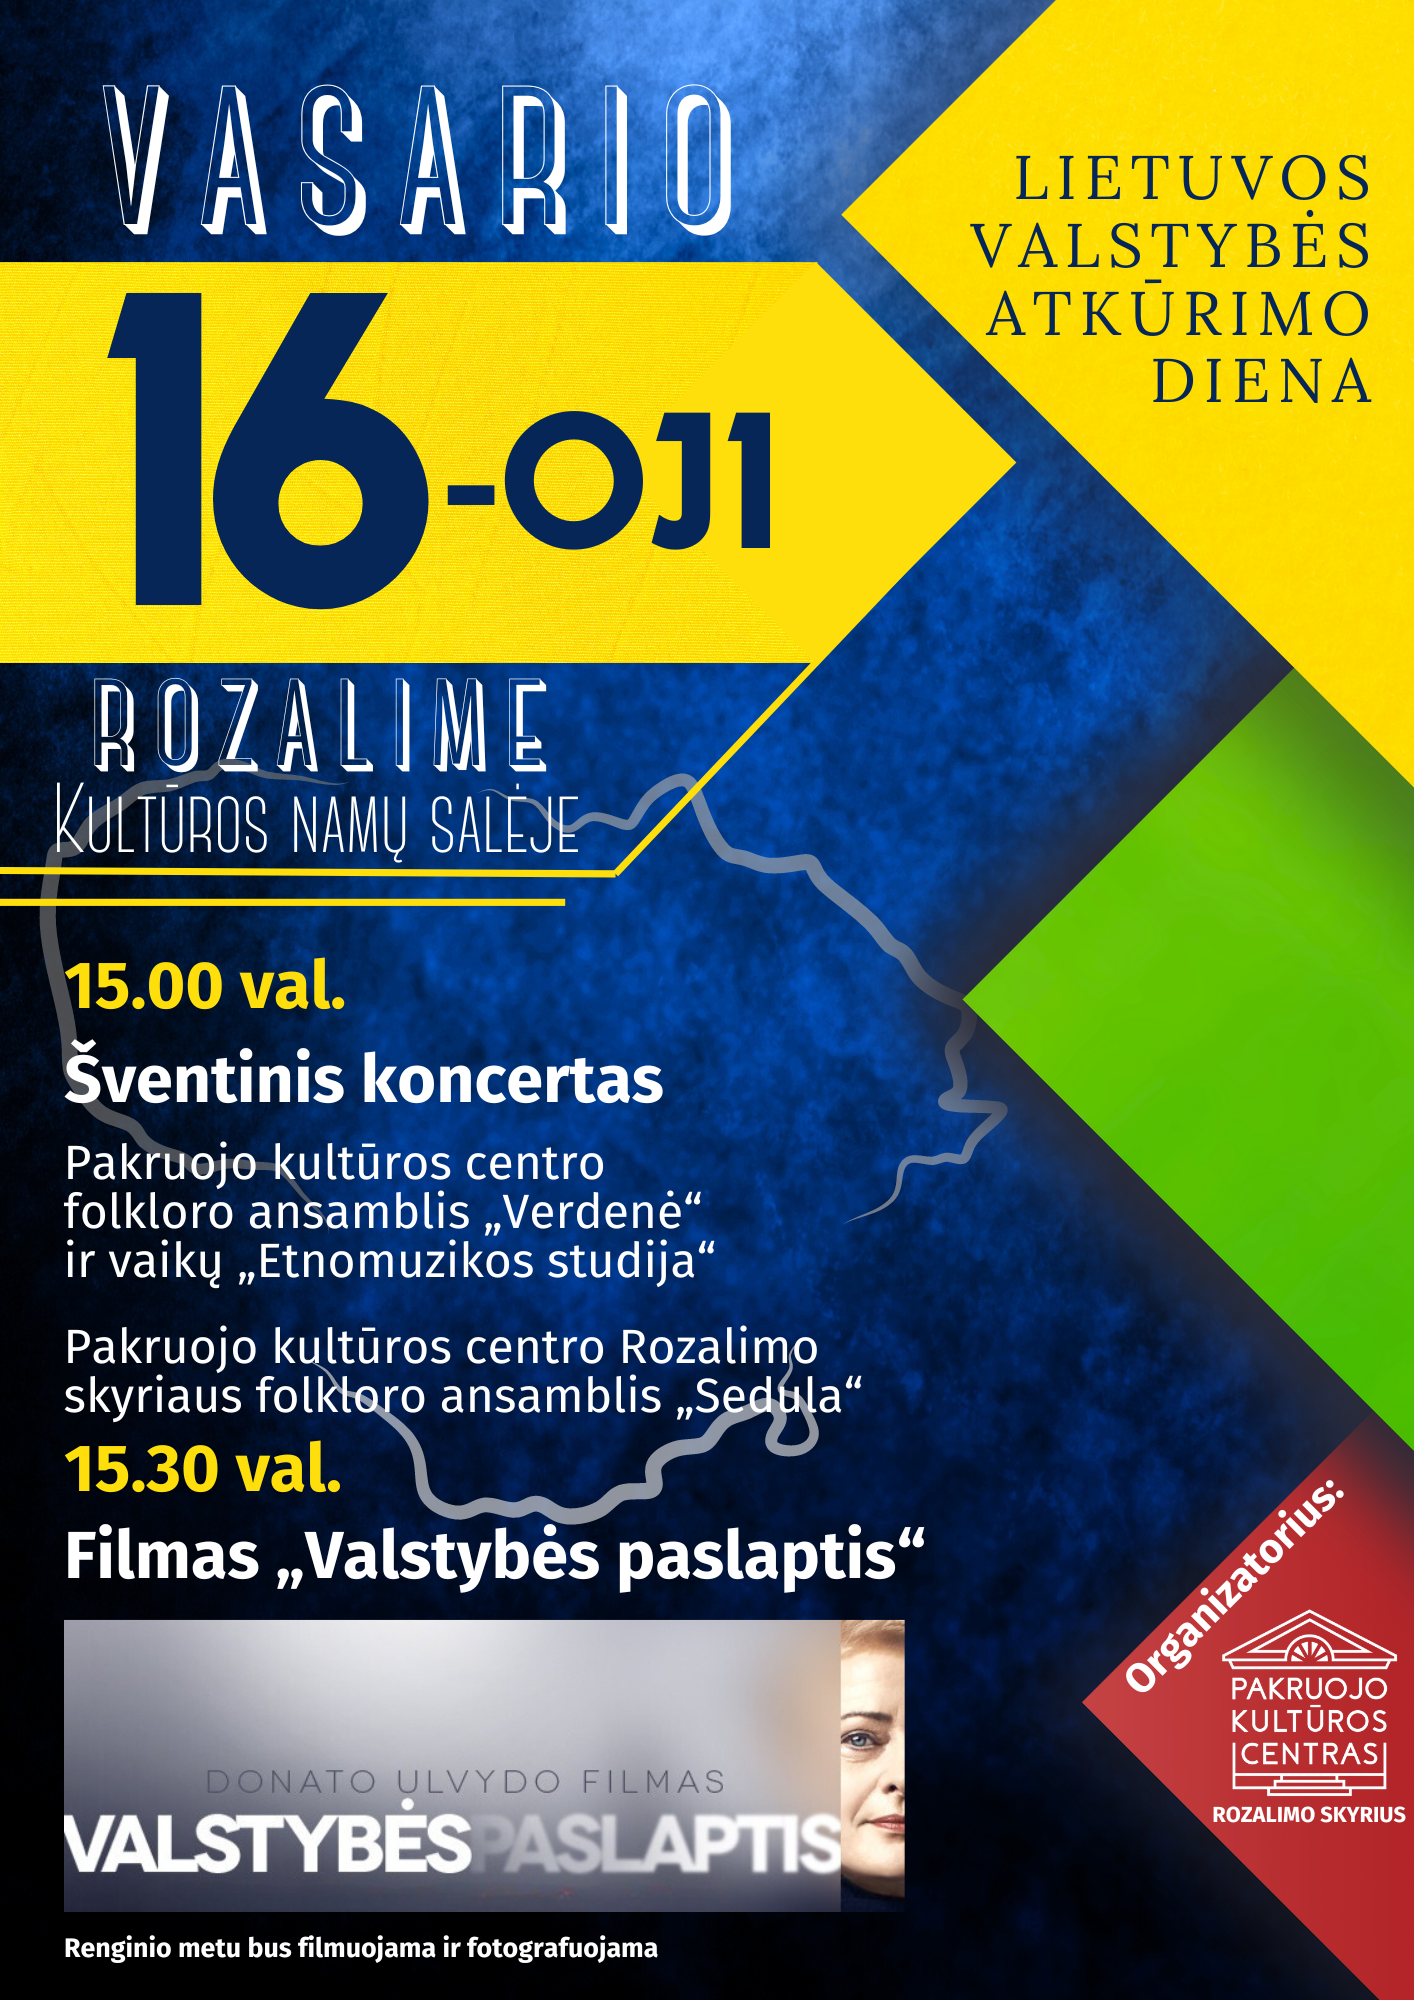 ROZALIMAS: Lietuvos valstybės atkūrimo dienos minėjimas